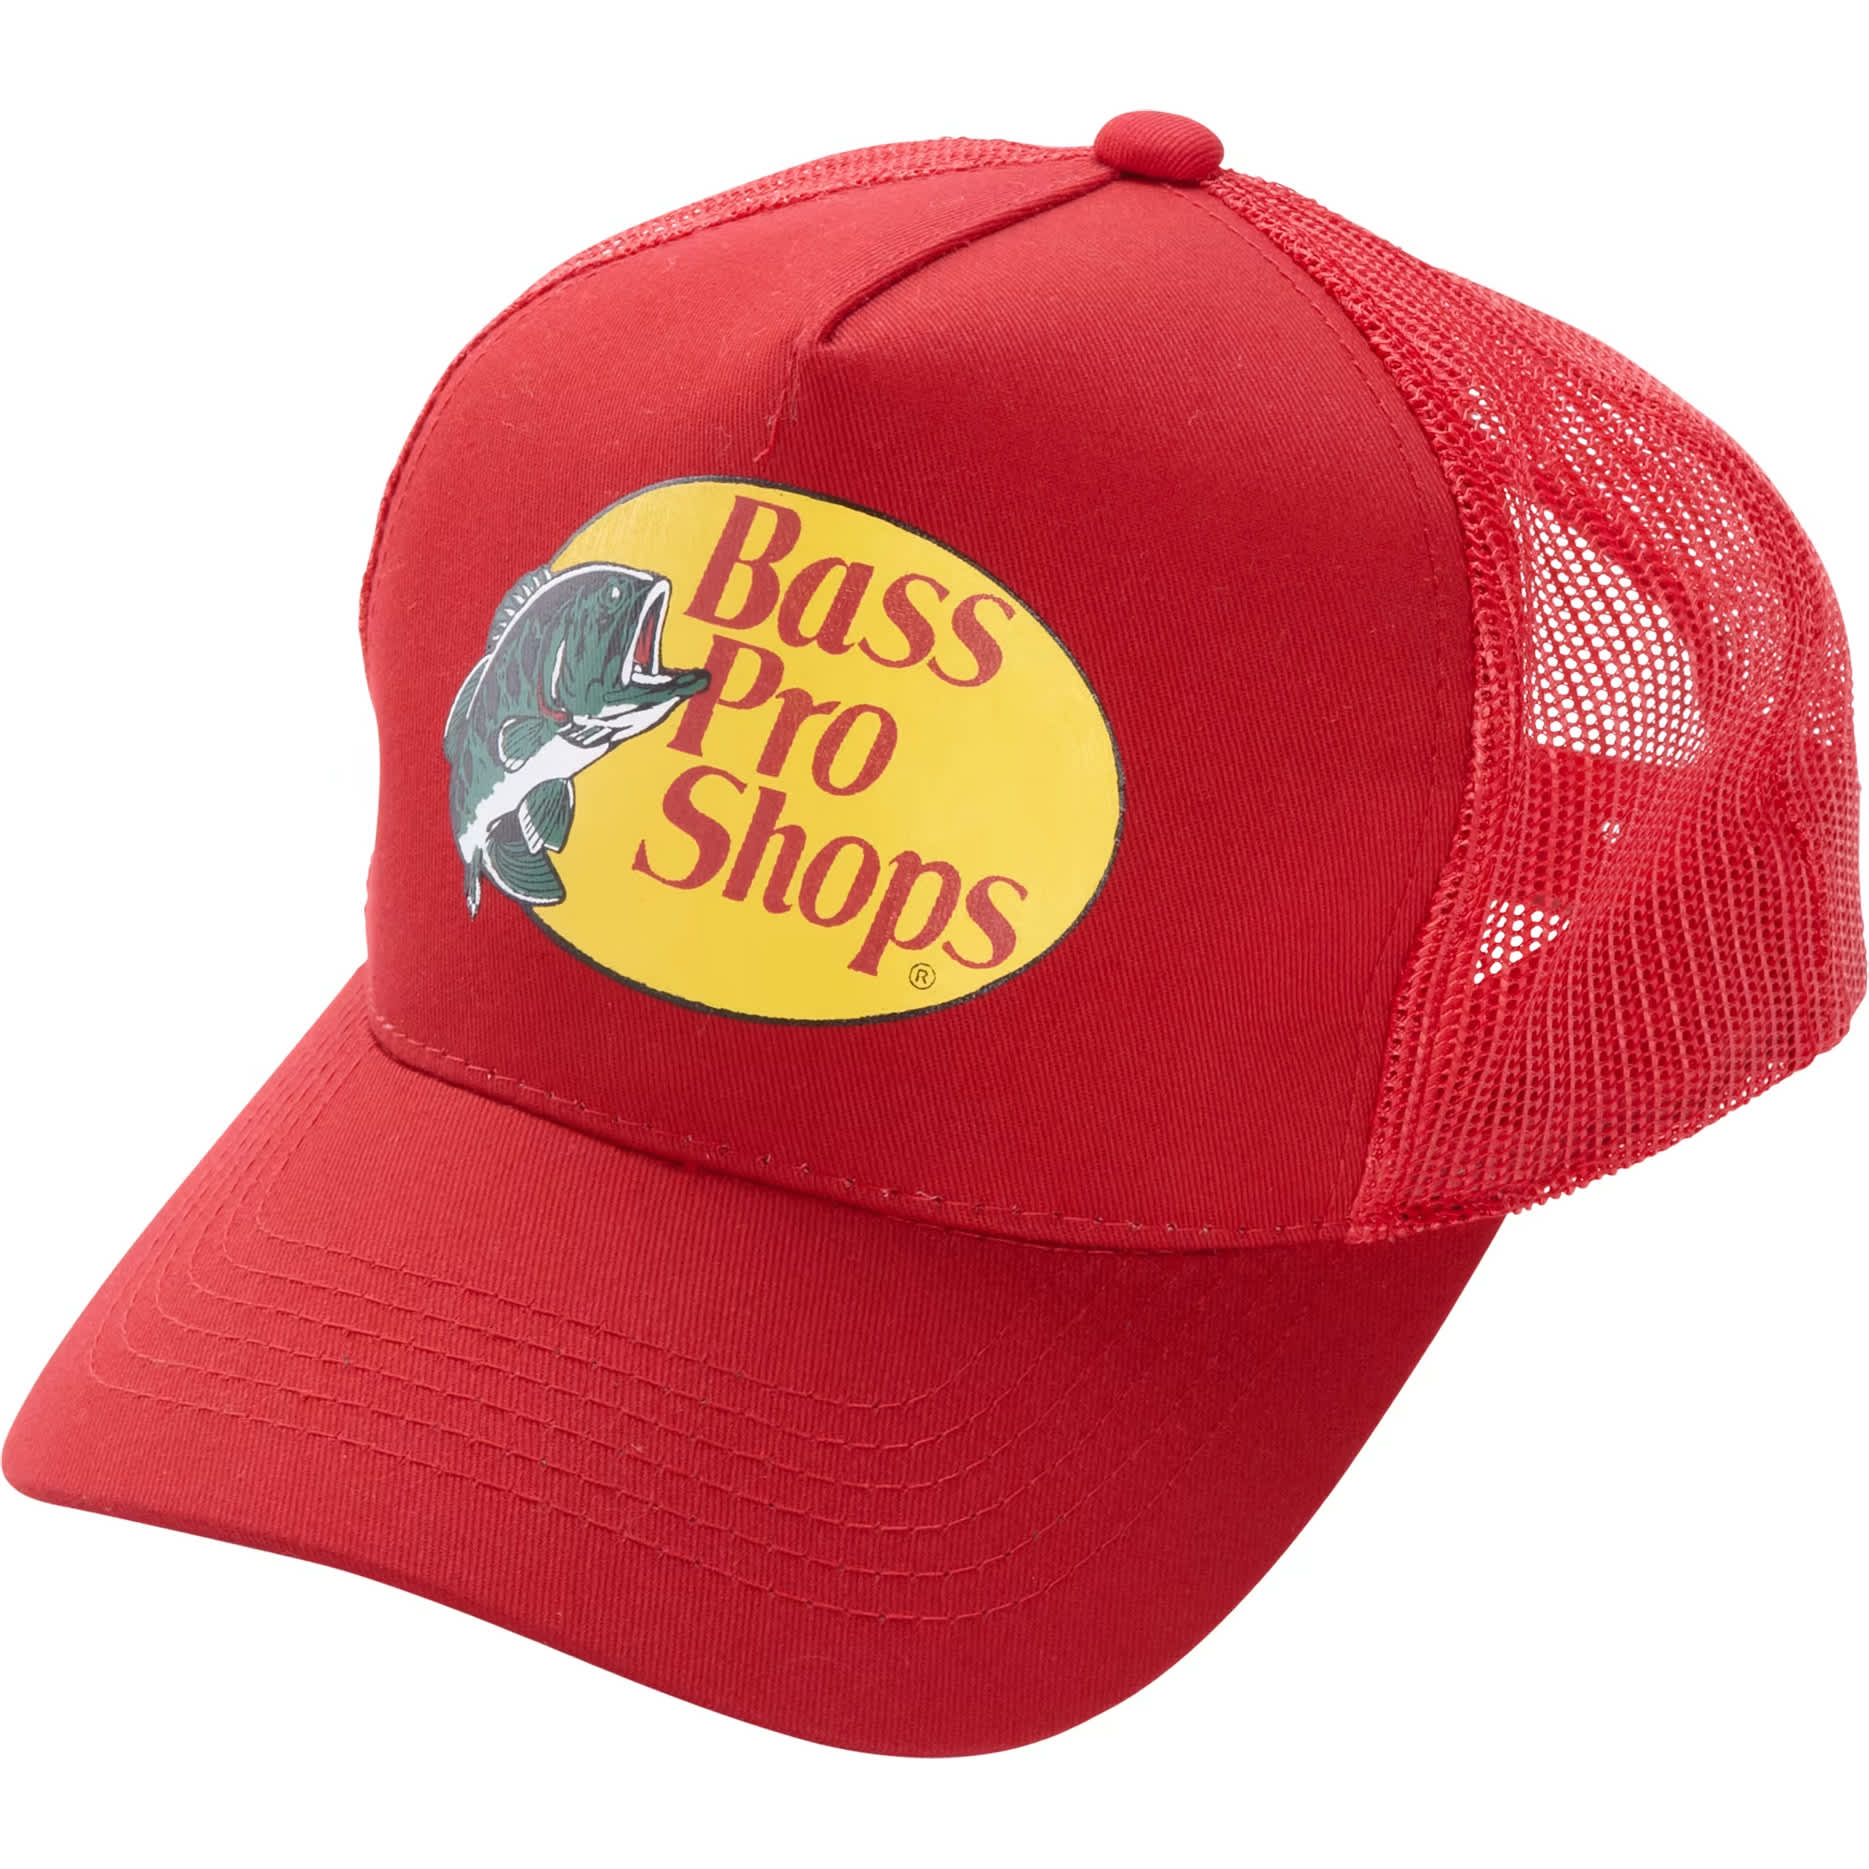 Bass Pro Shops Trucker Cap - Red